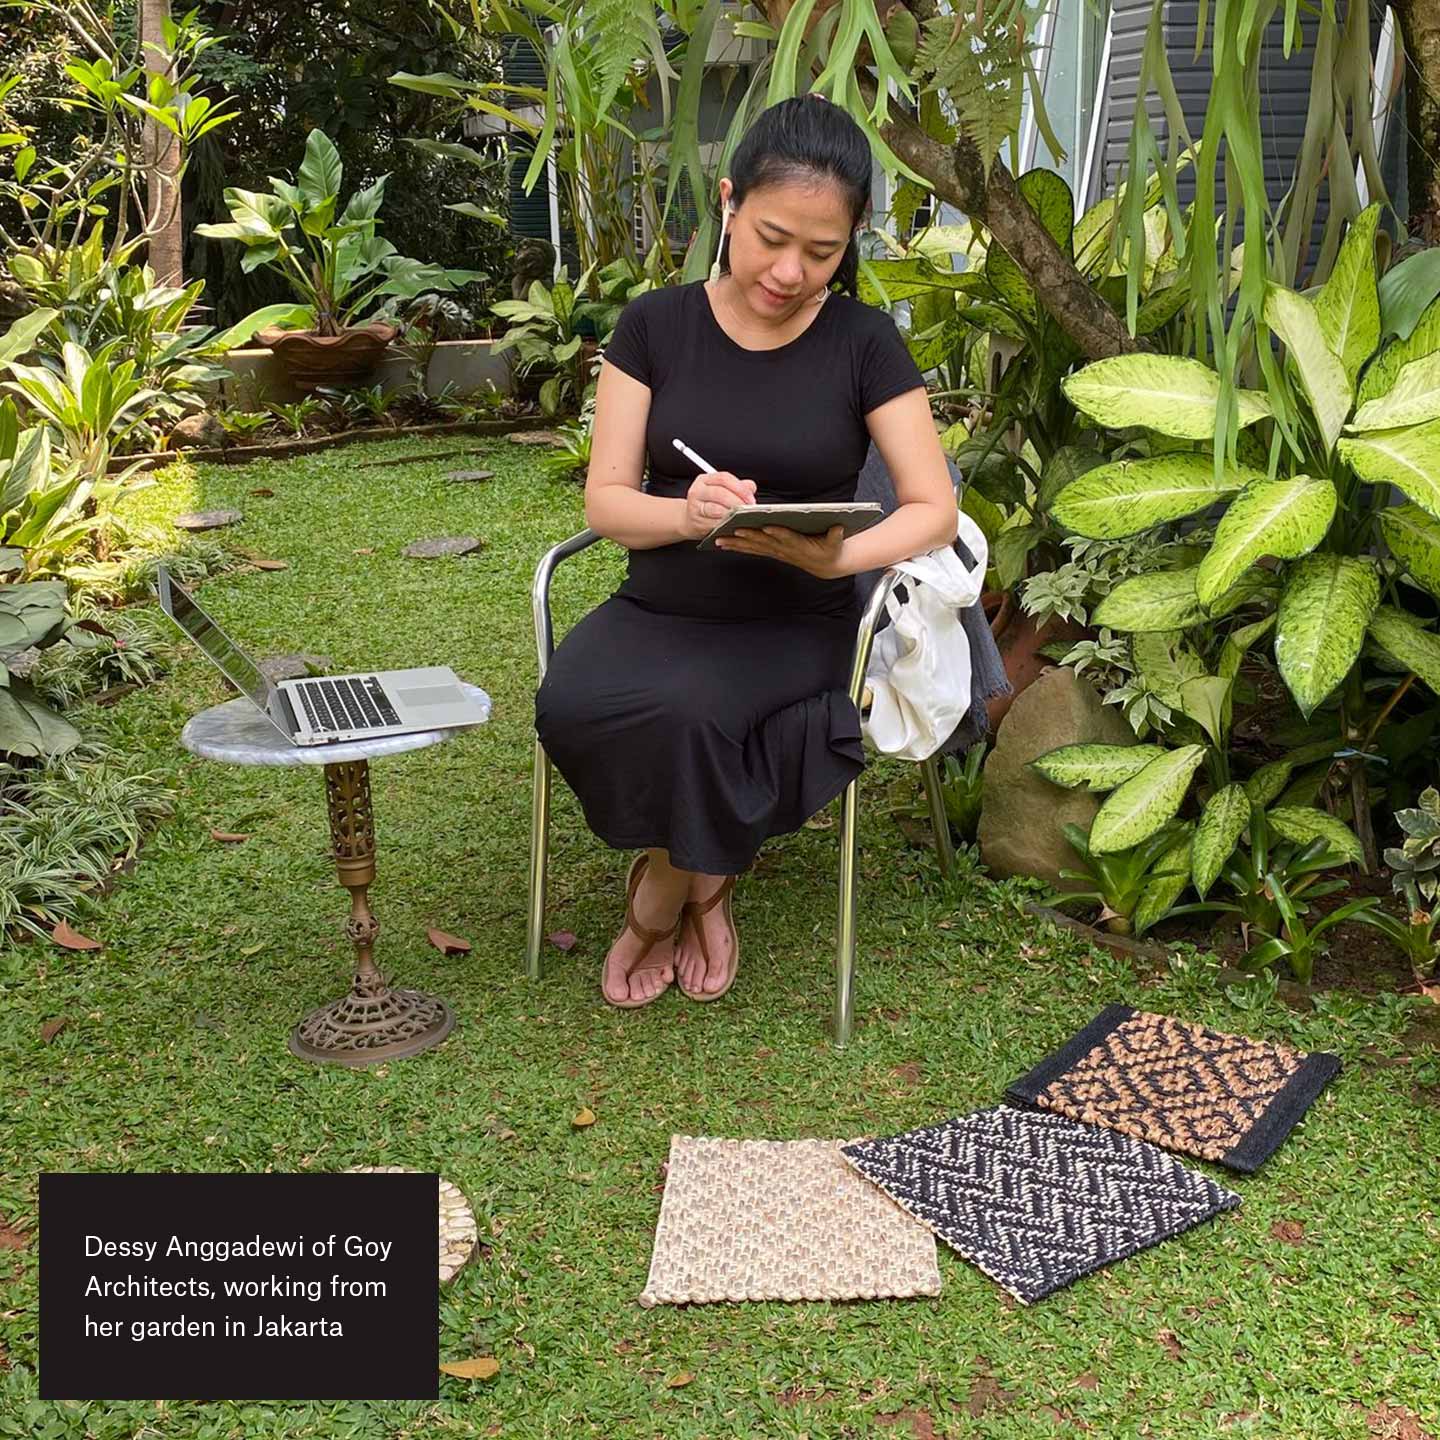 Dessy Anggadewi von Goy Architects arbeitet von ihrem Garten in Jakarta aus